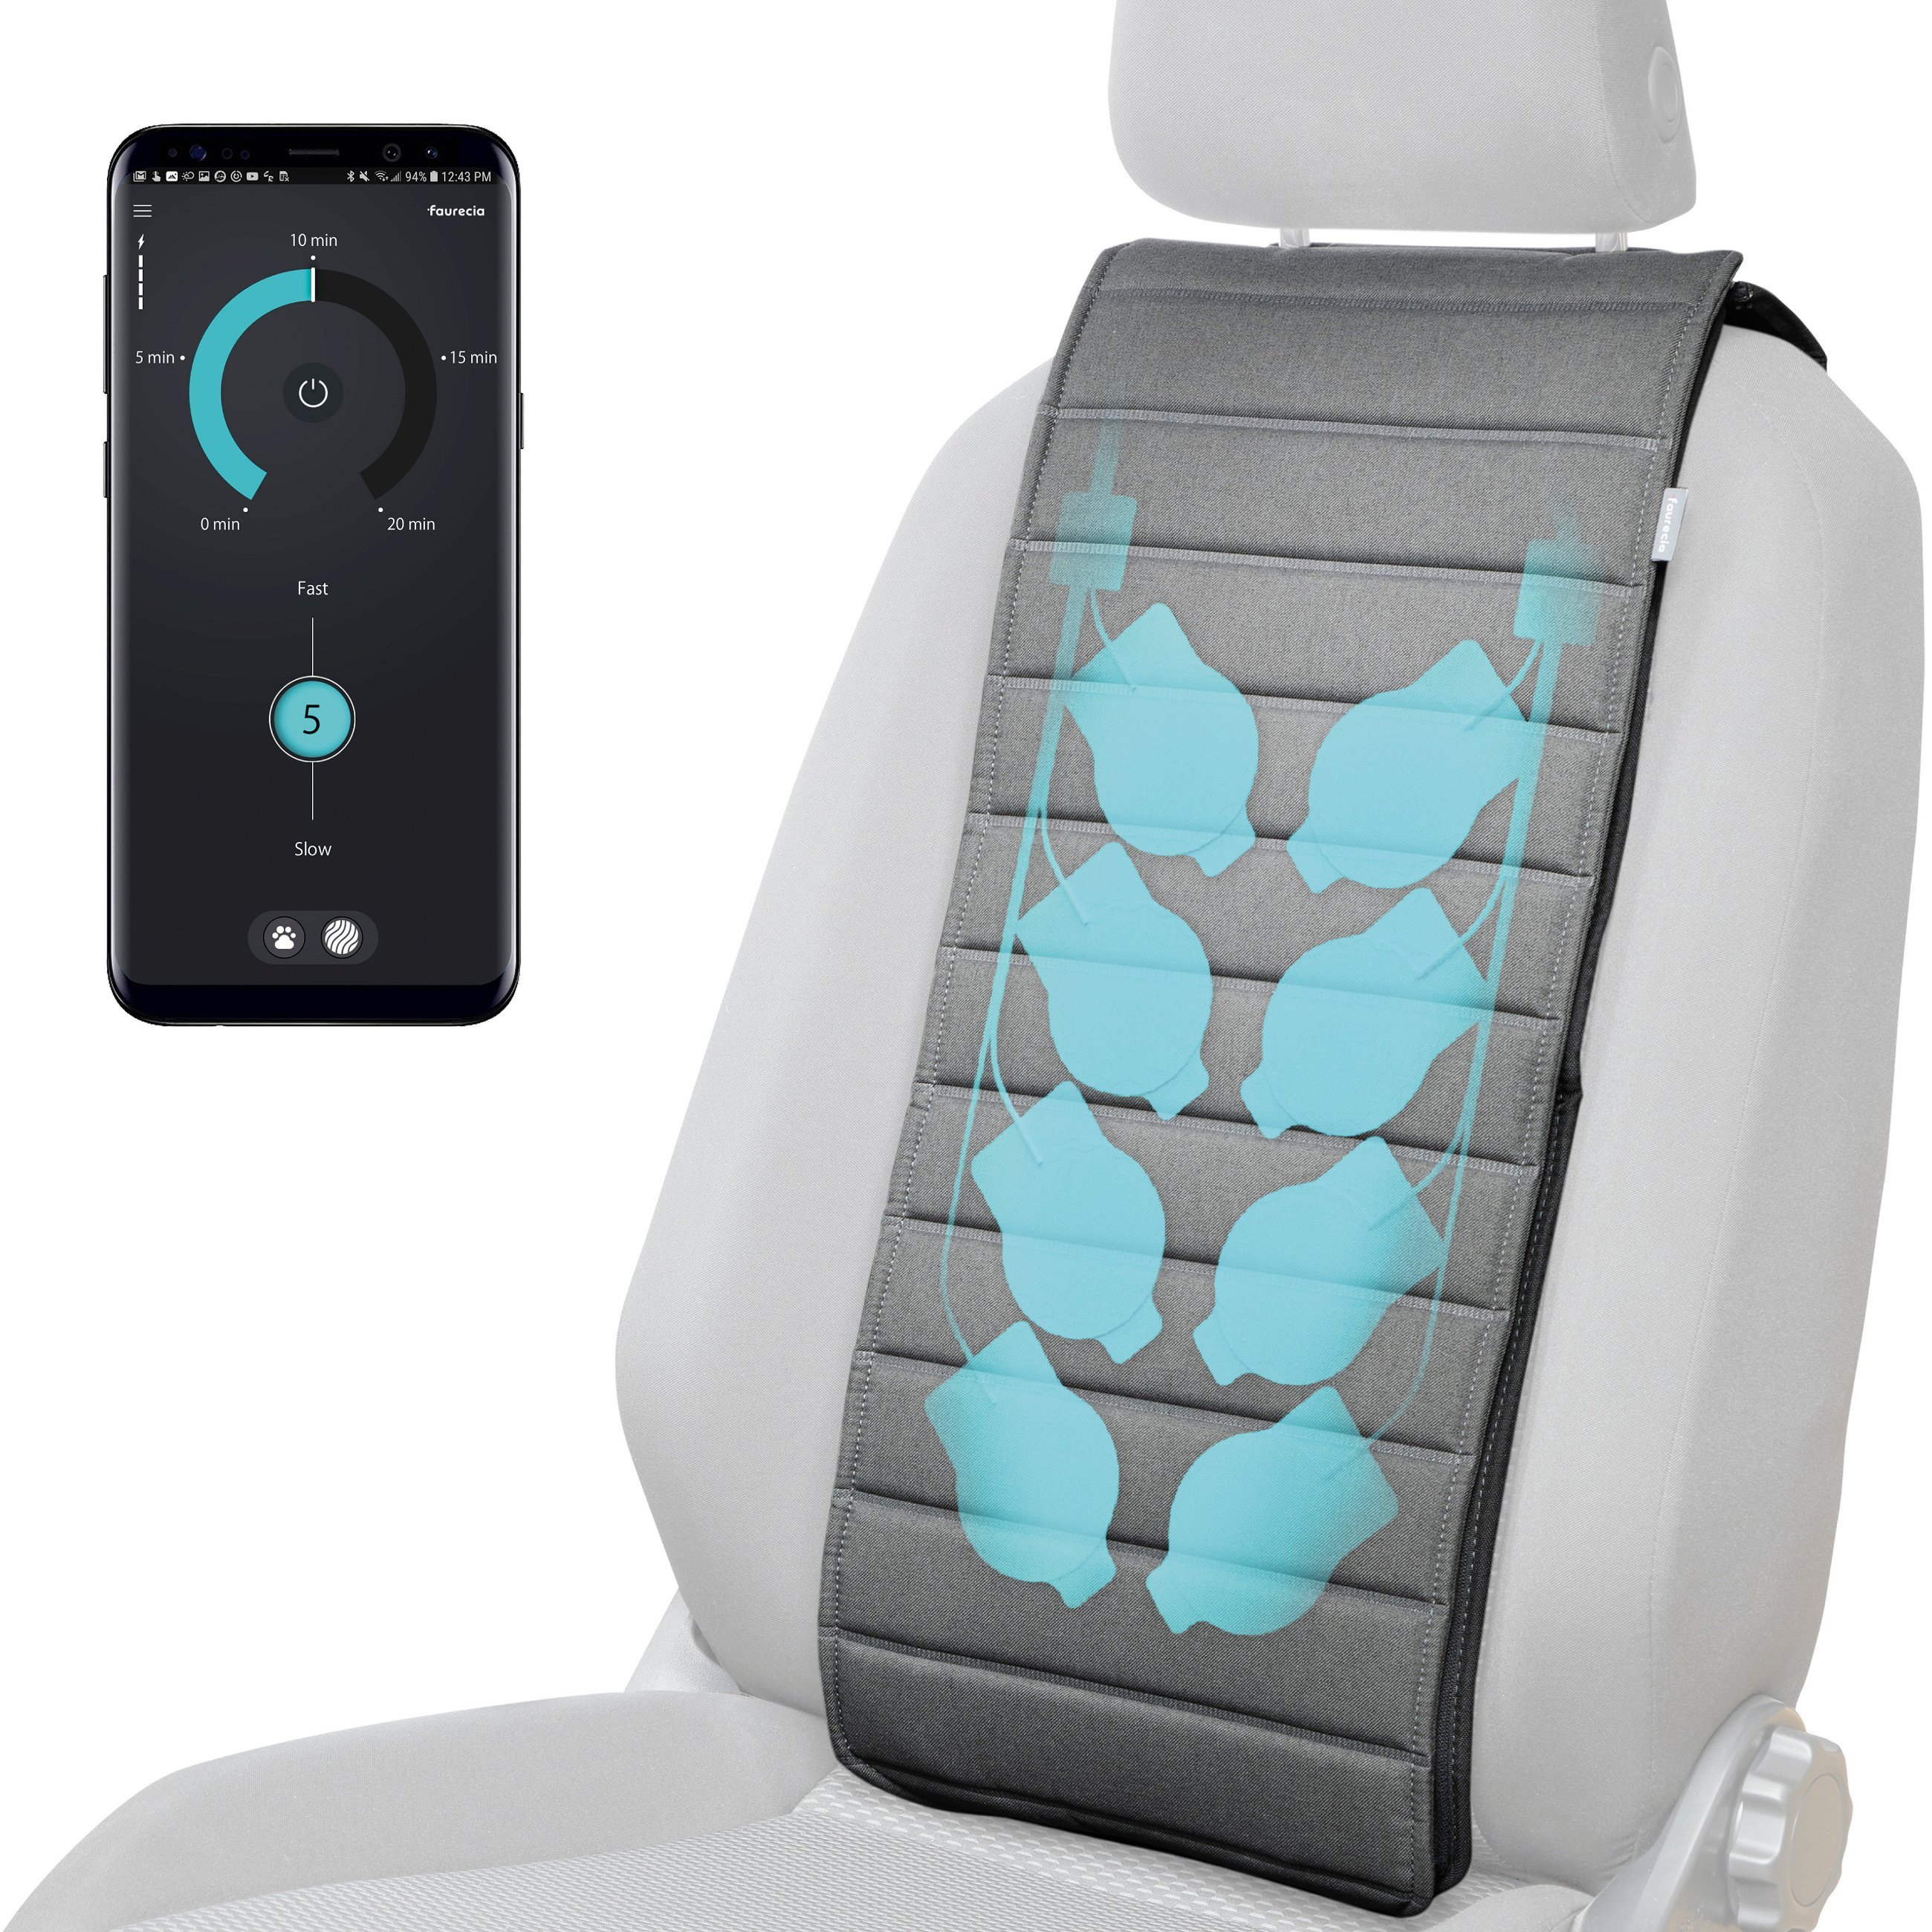 Smart Massage Cover Faurecia, housse de siège massante pour voiture avec commande par application et batterie intégrée, housse de siège pour voiture certifiée par Action pour la santé du dos